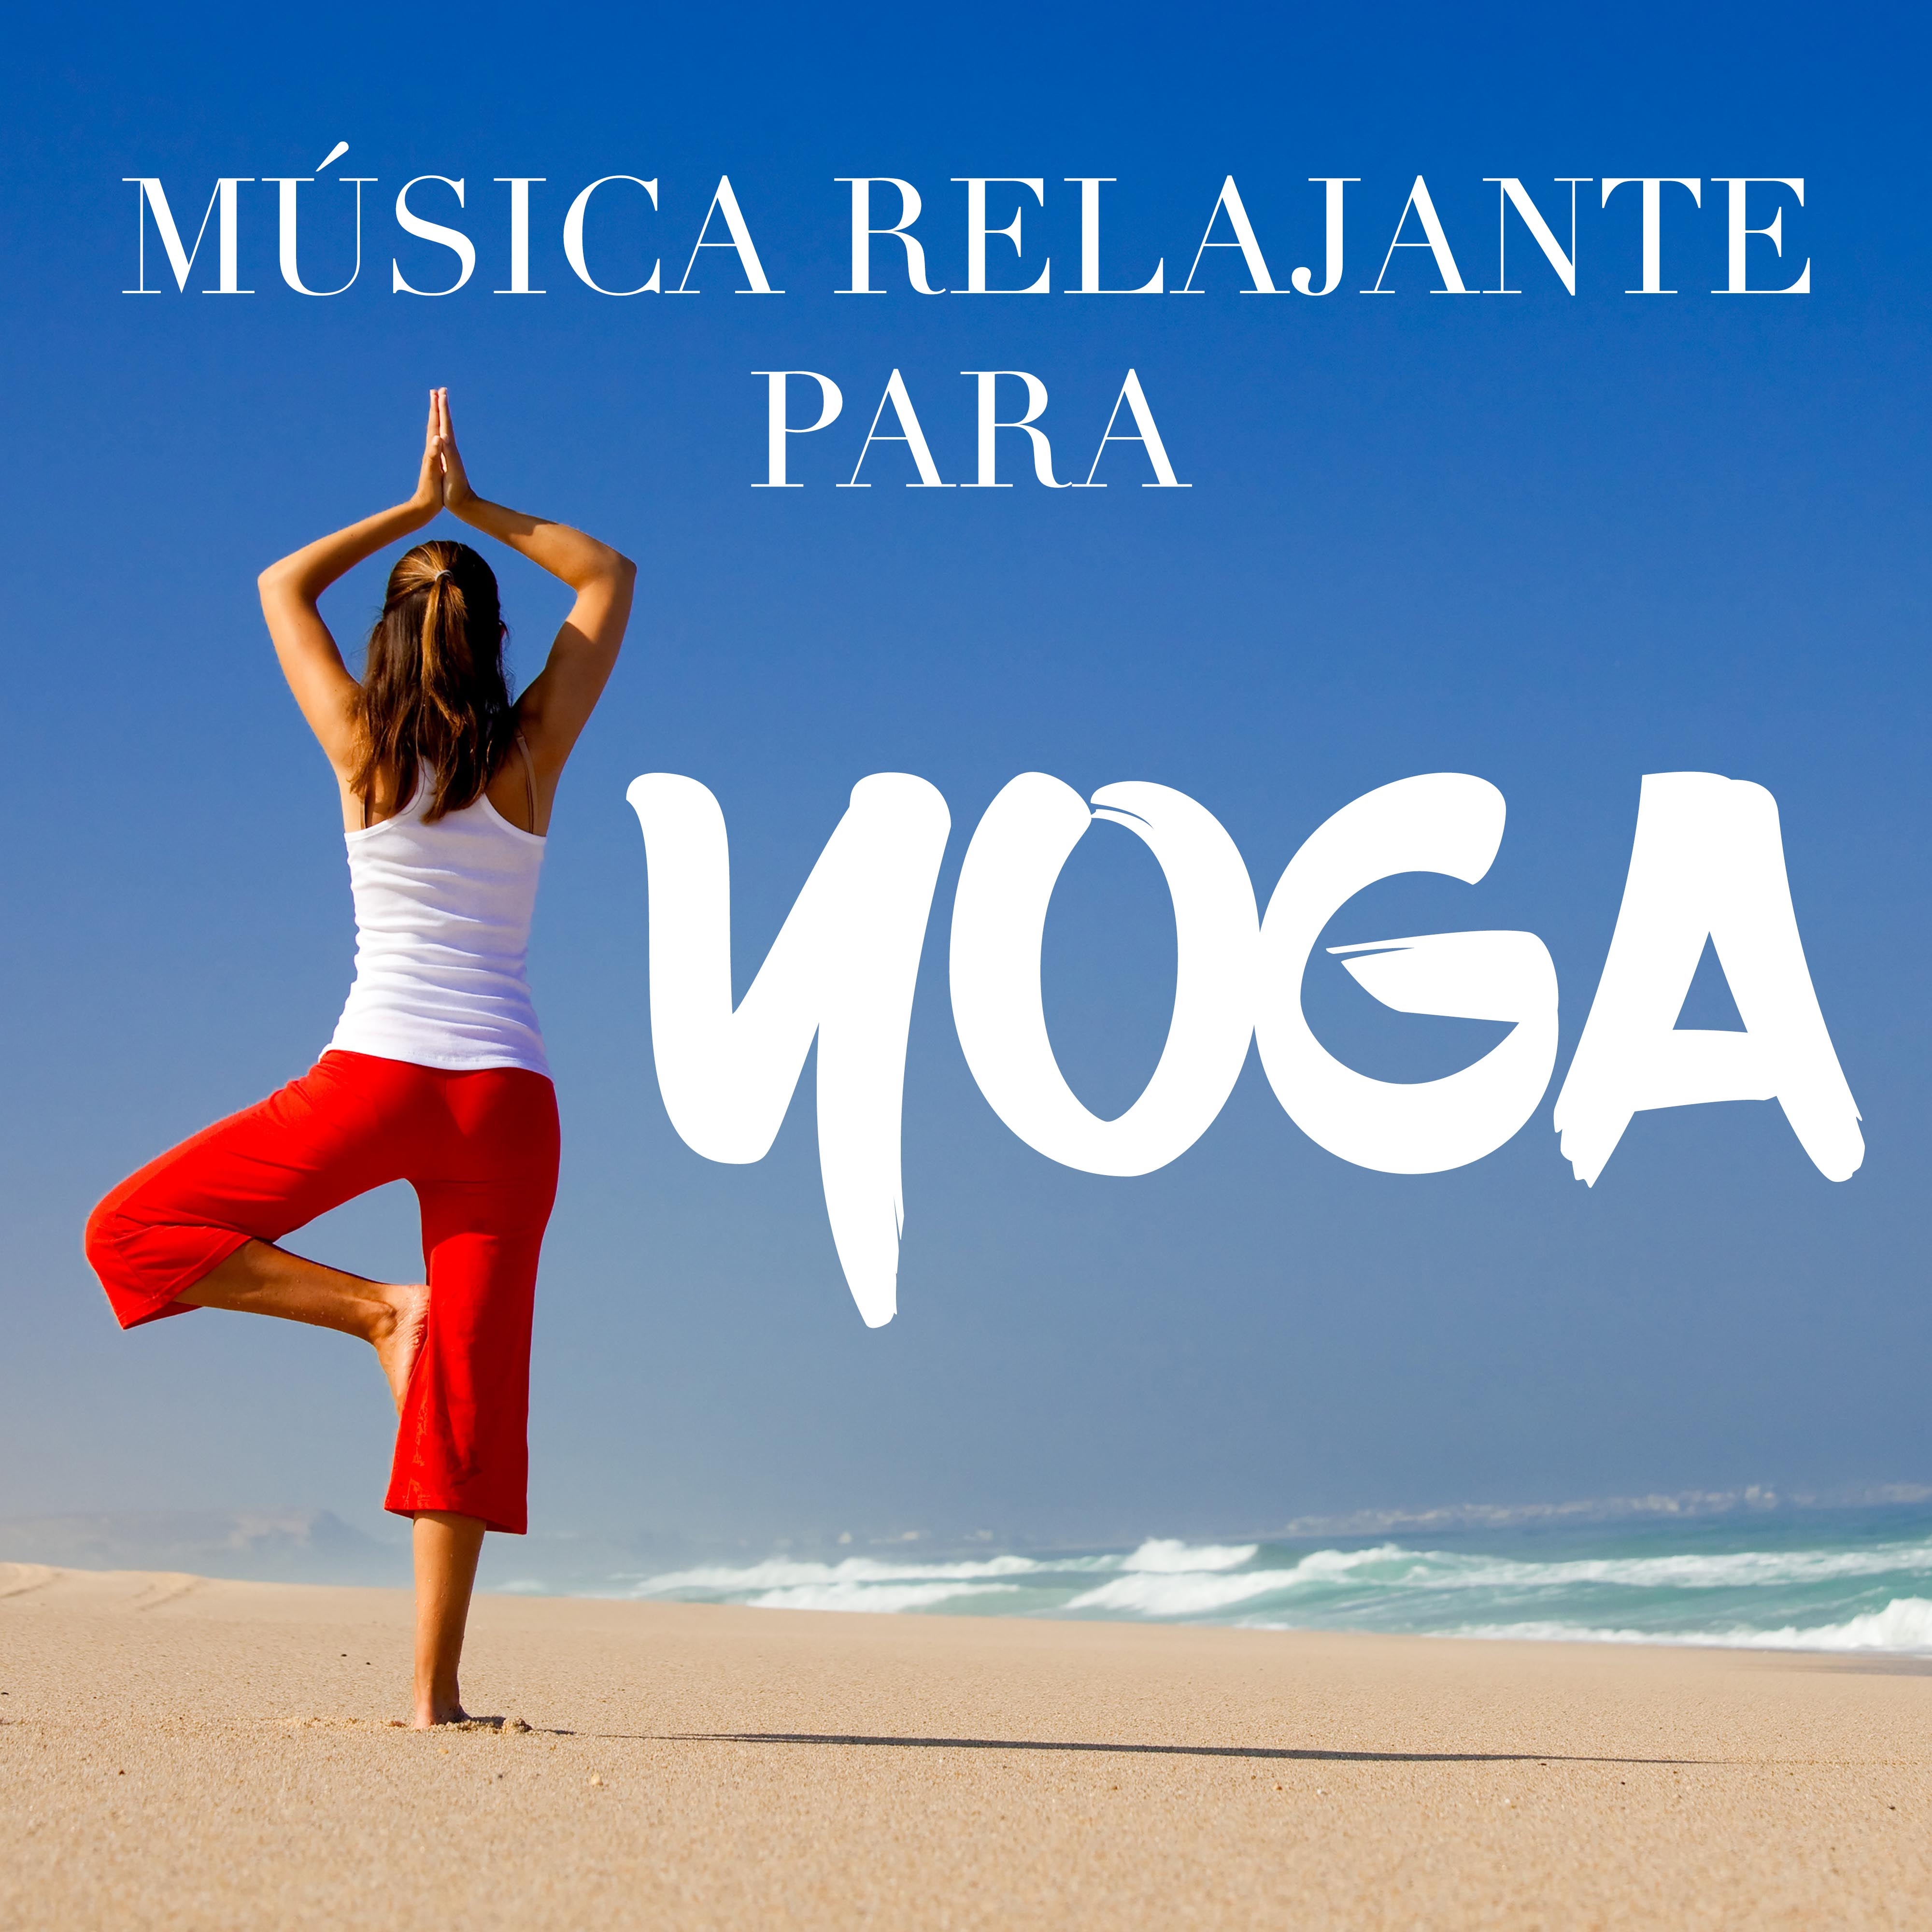 Música Relajante para Yoga - Sonidos de la Naturaleza para Practicar Posturas de Yoga y Relajar y Desintoxicar Cuerpo y Mente